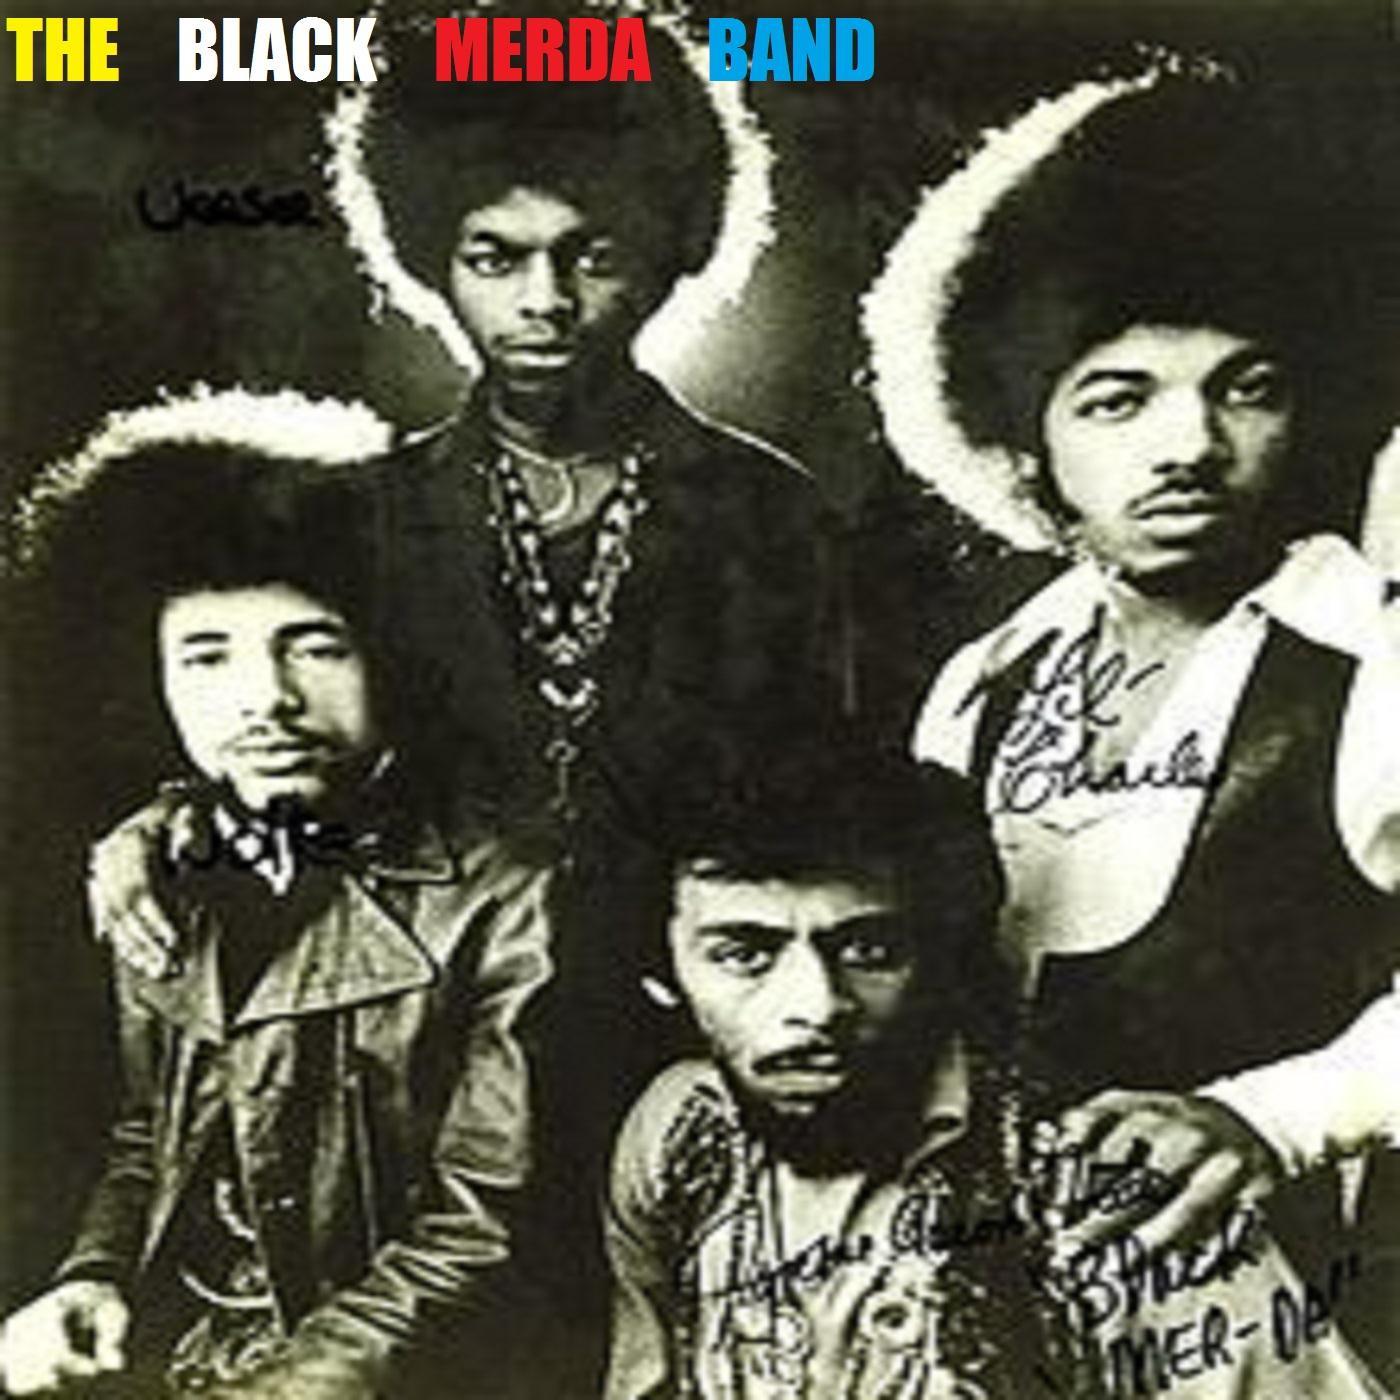 The Black Merda Band